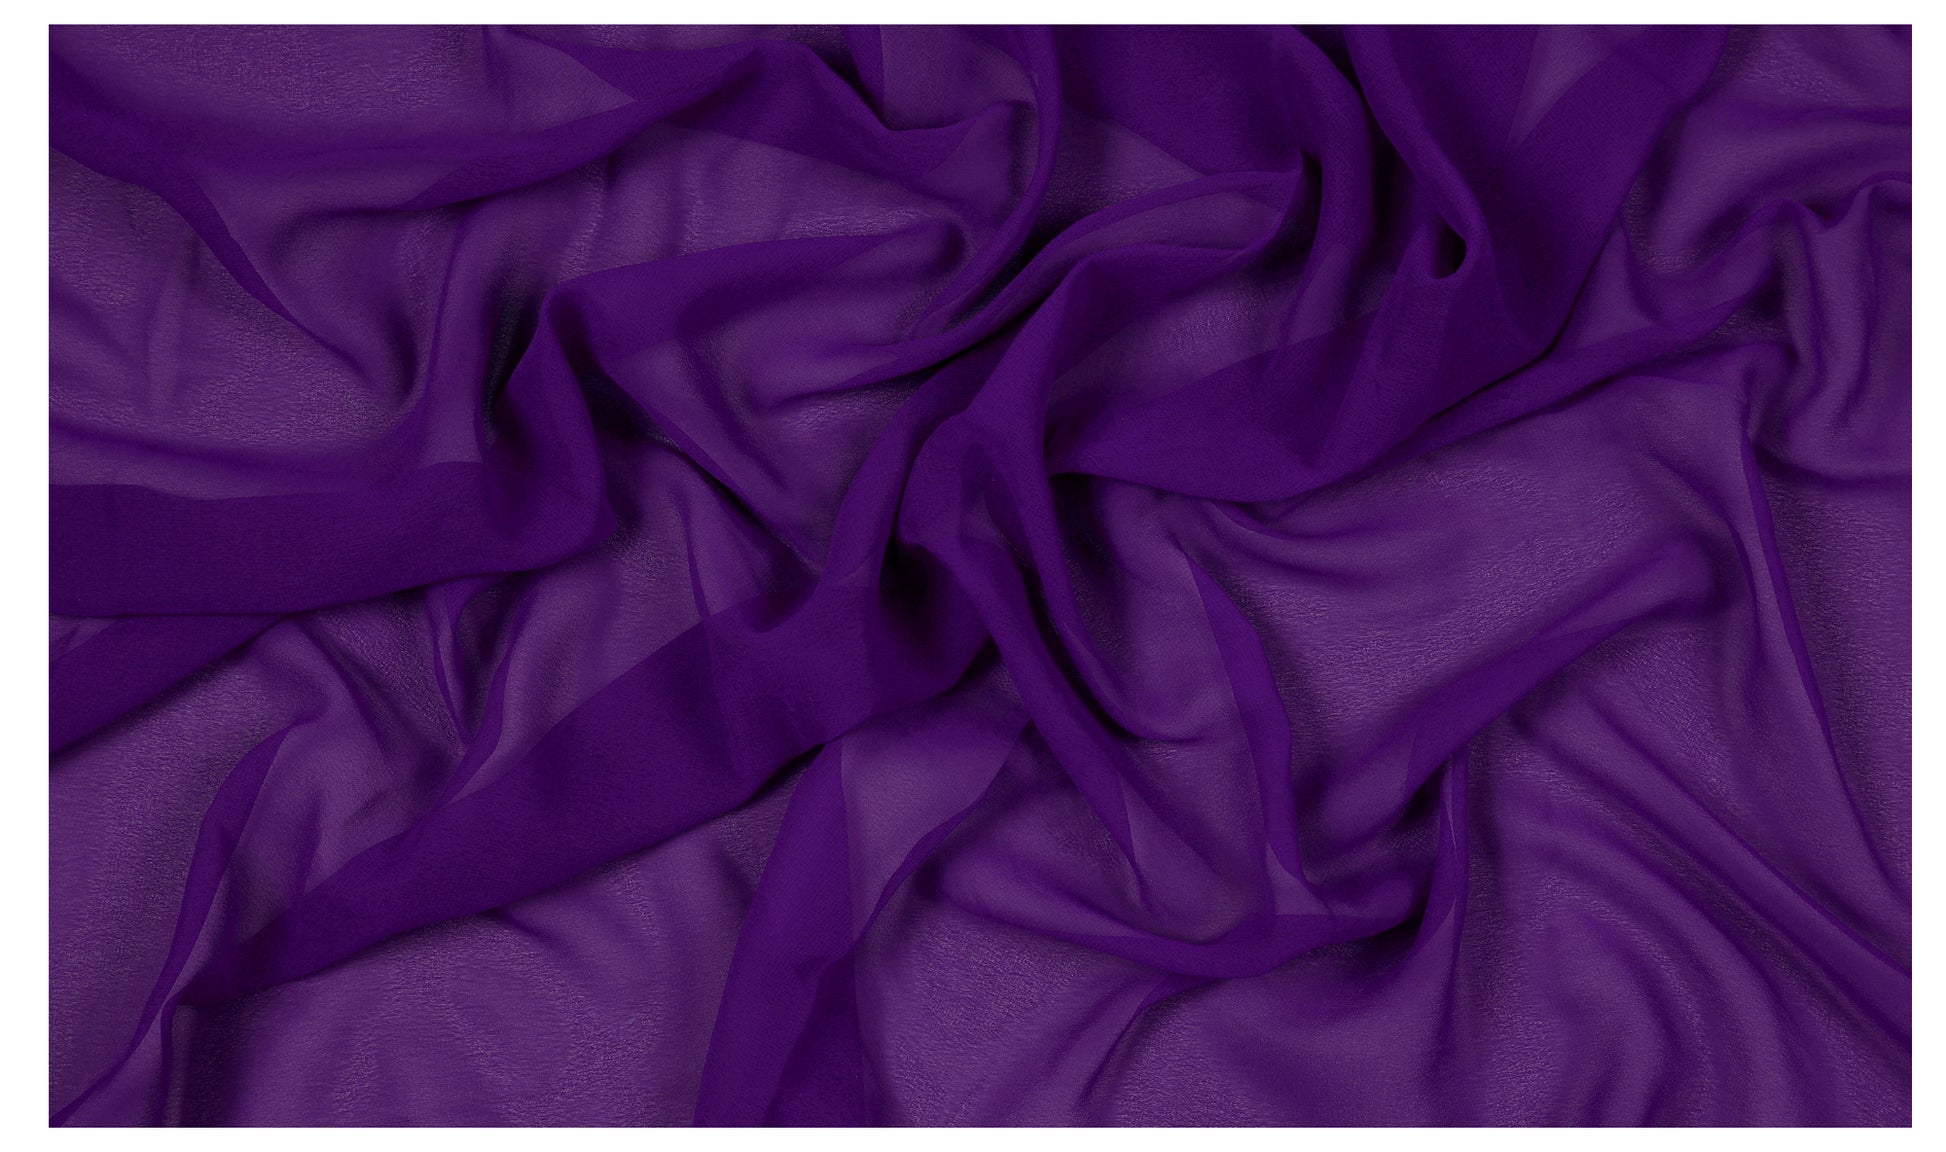 Cadbury Purple,6bfd52c2-0530-4dfc-a84e-1e059105f008